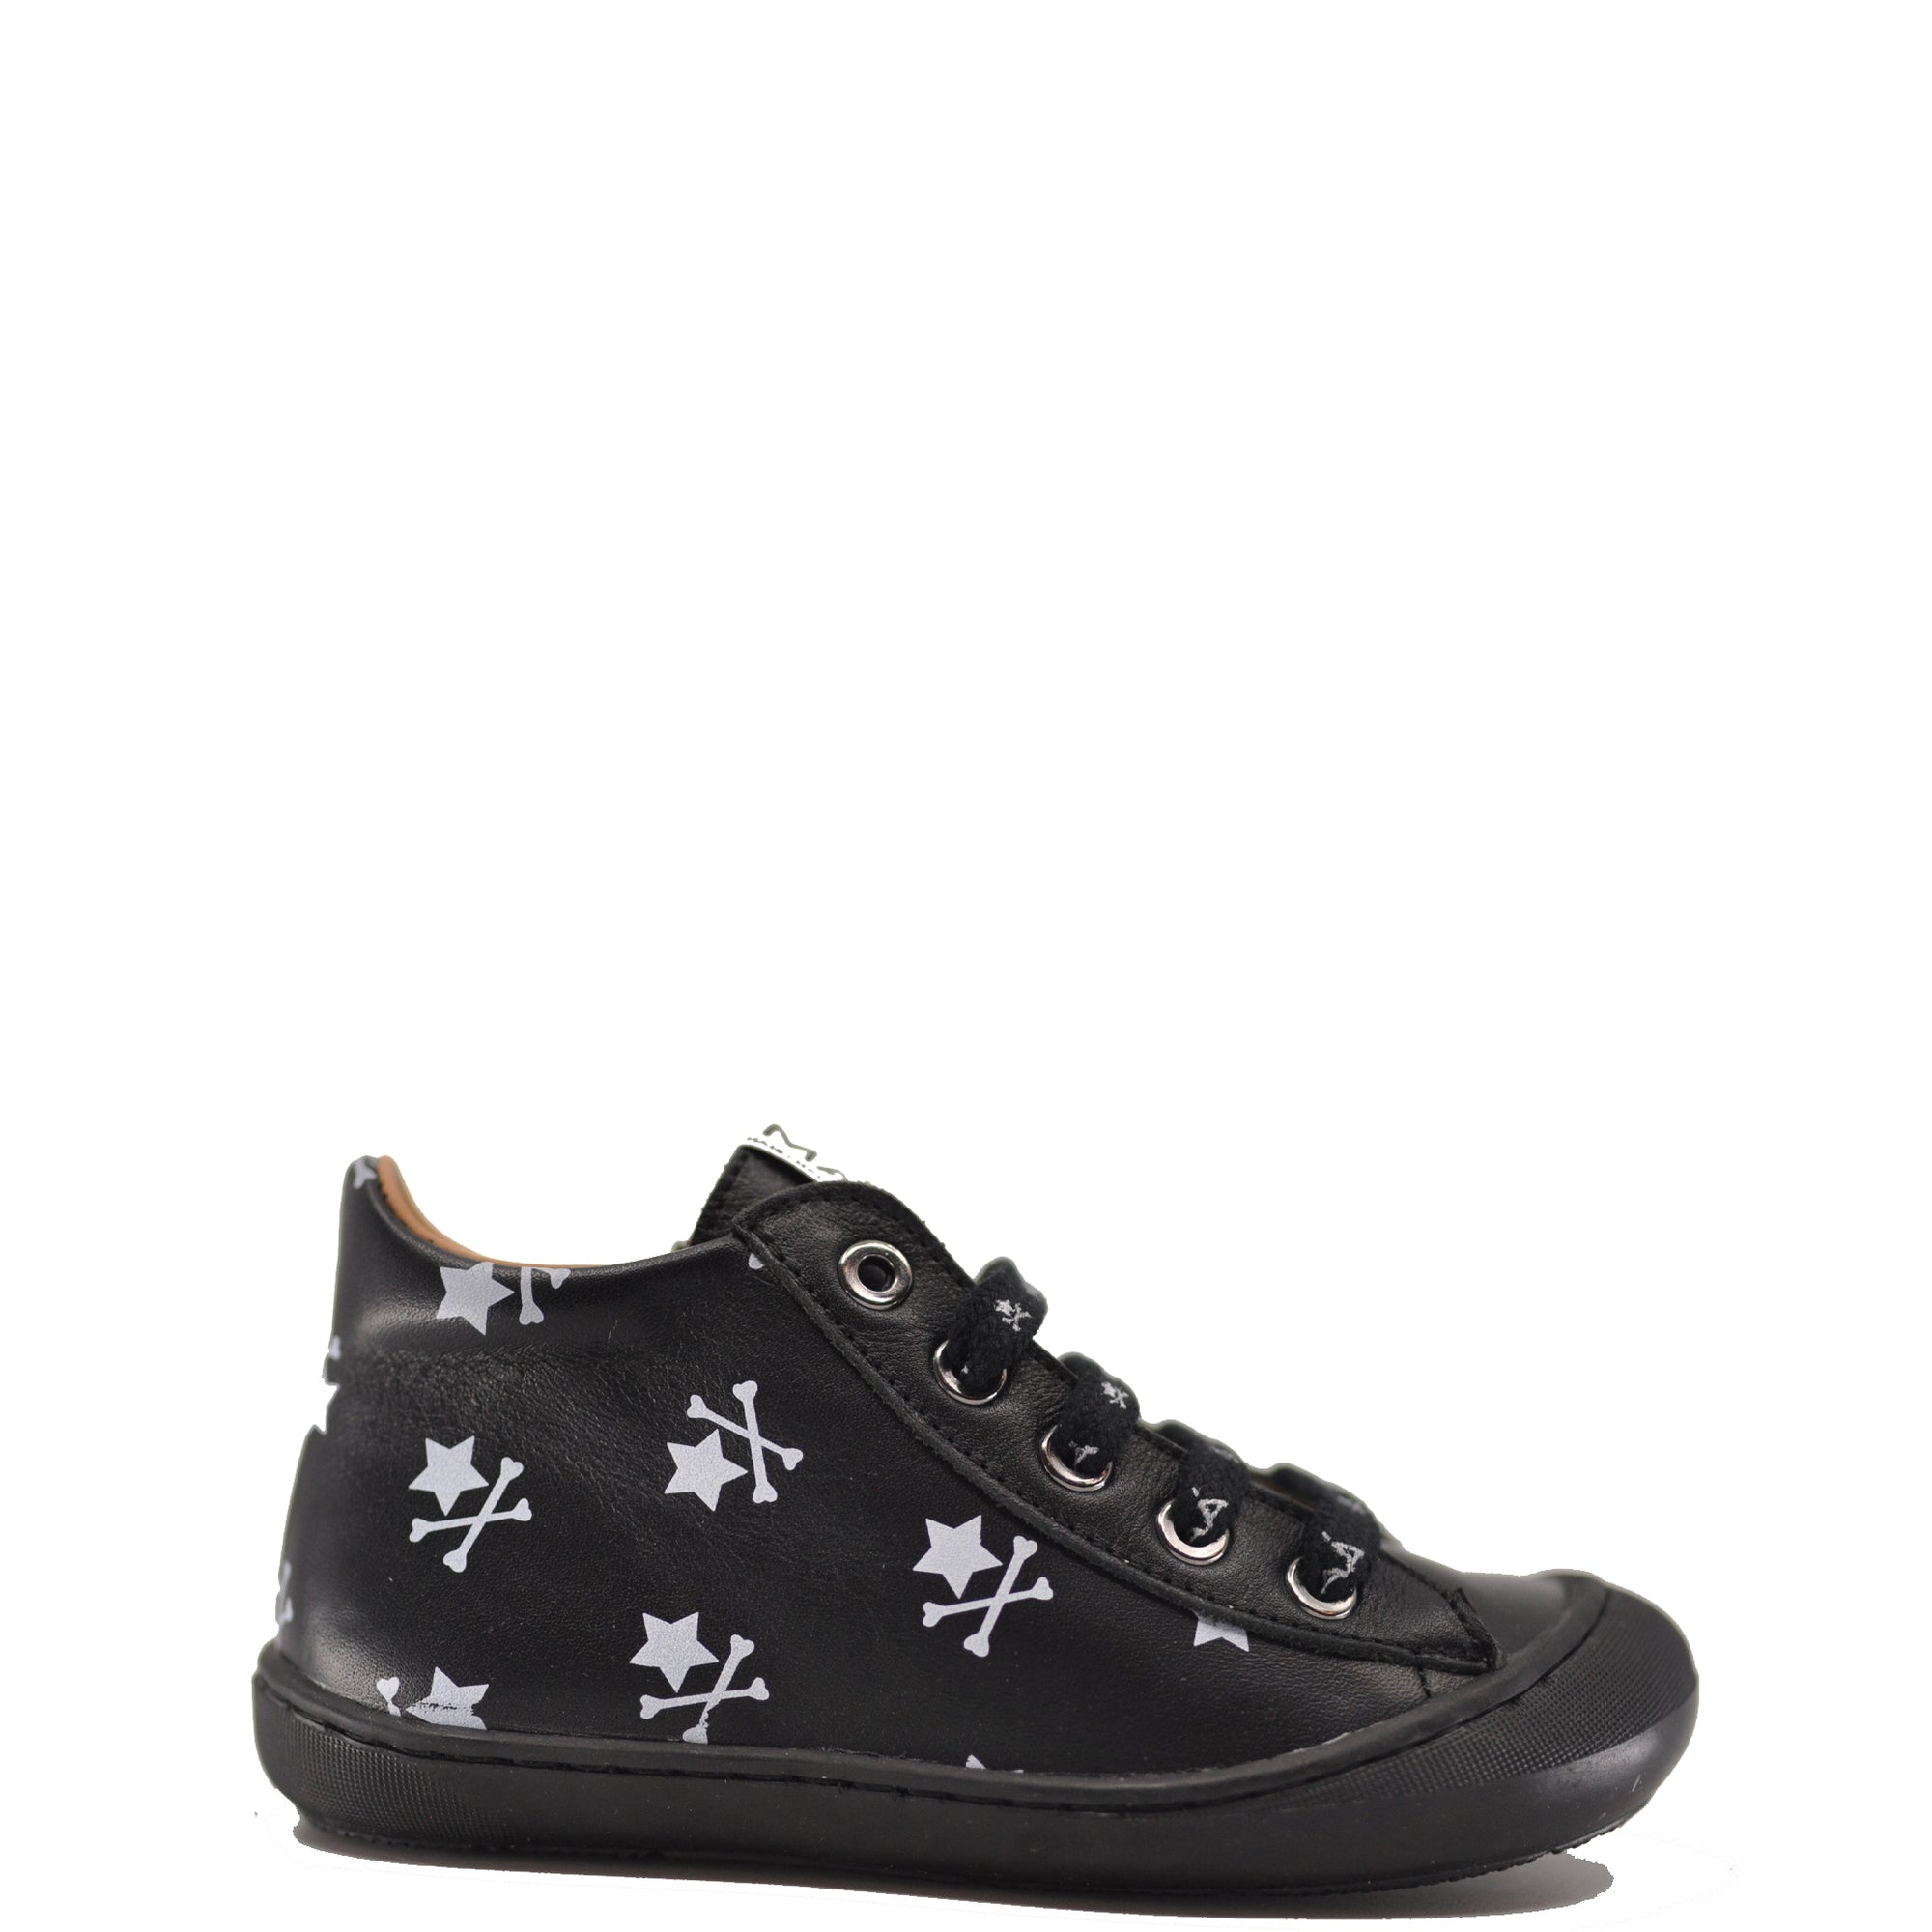 MAA Black Bones Baby Sneaker-Tassel Children Shoes